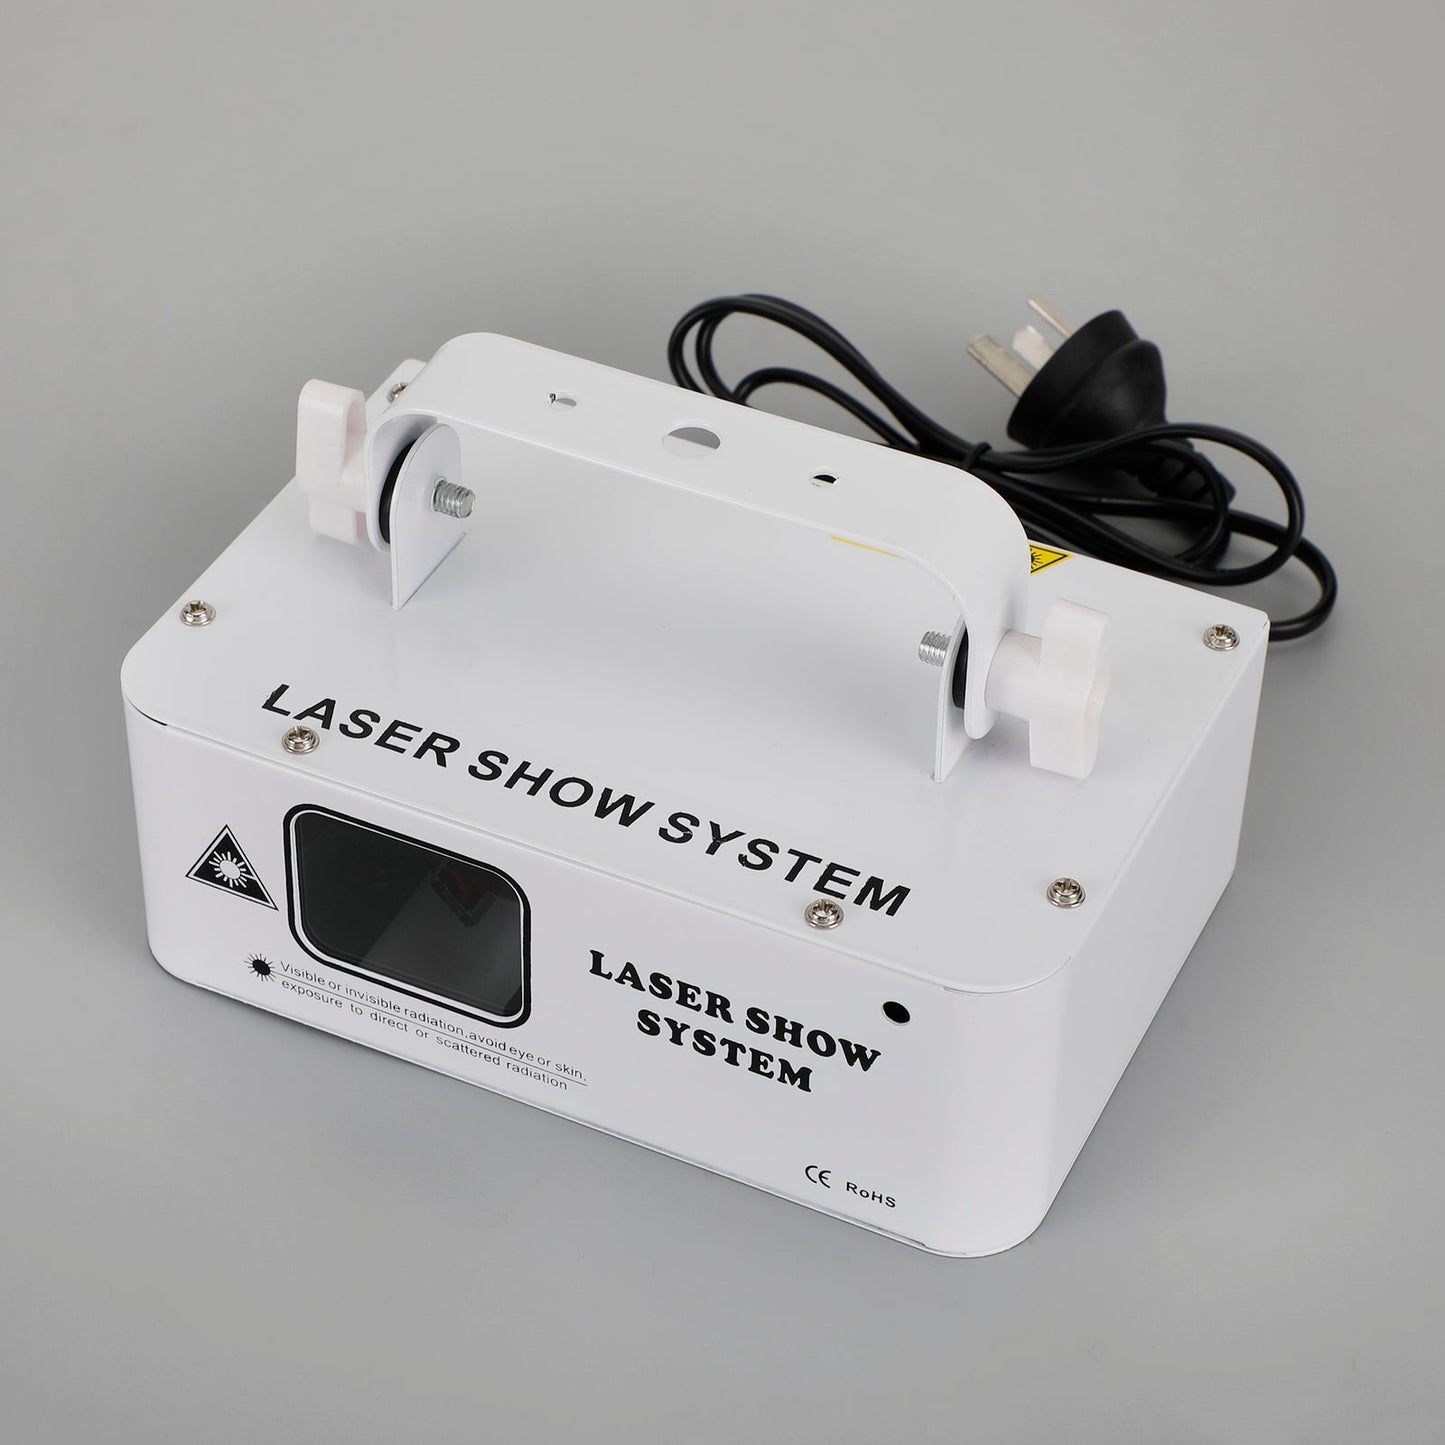 Blanc 500mW DMX RVB LED Laser Faisceau Scanner Projecteur Partie Lumière Laser AU